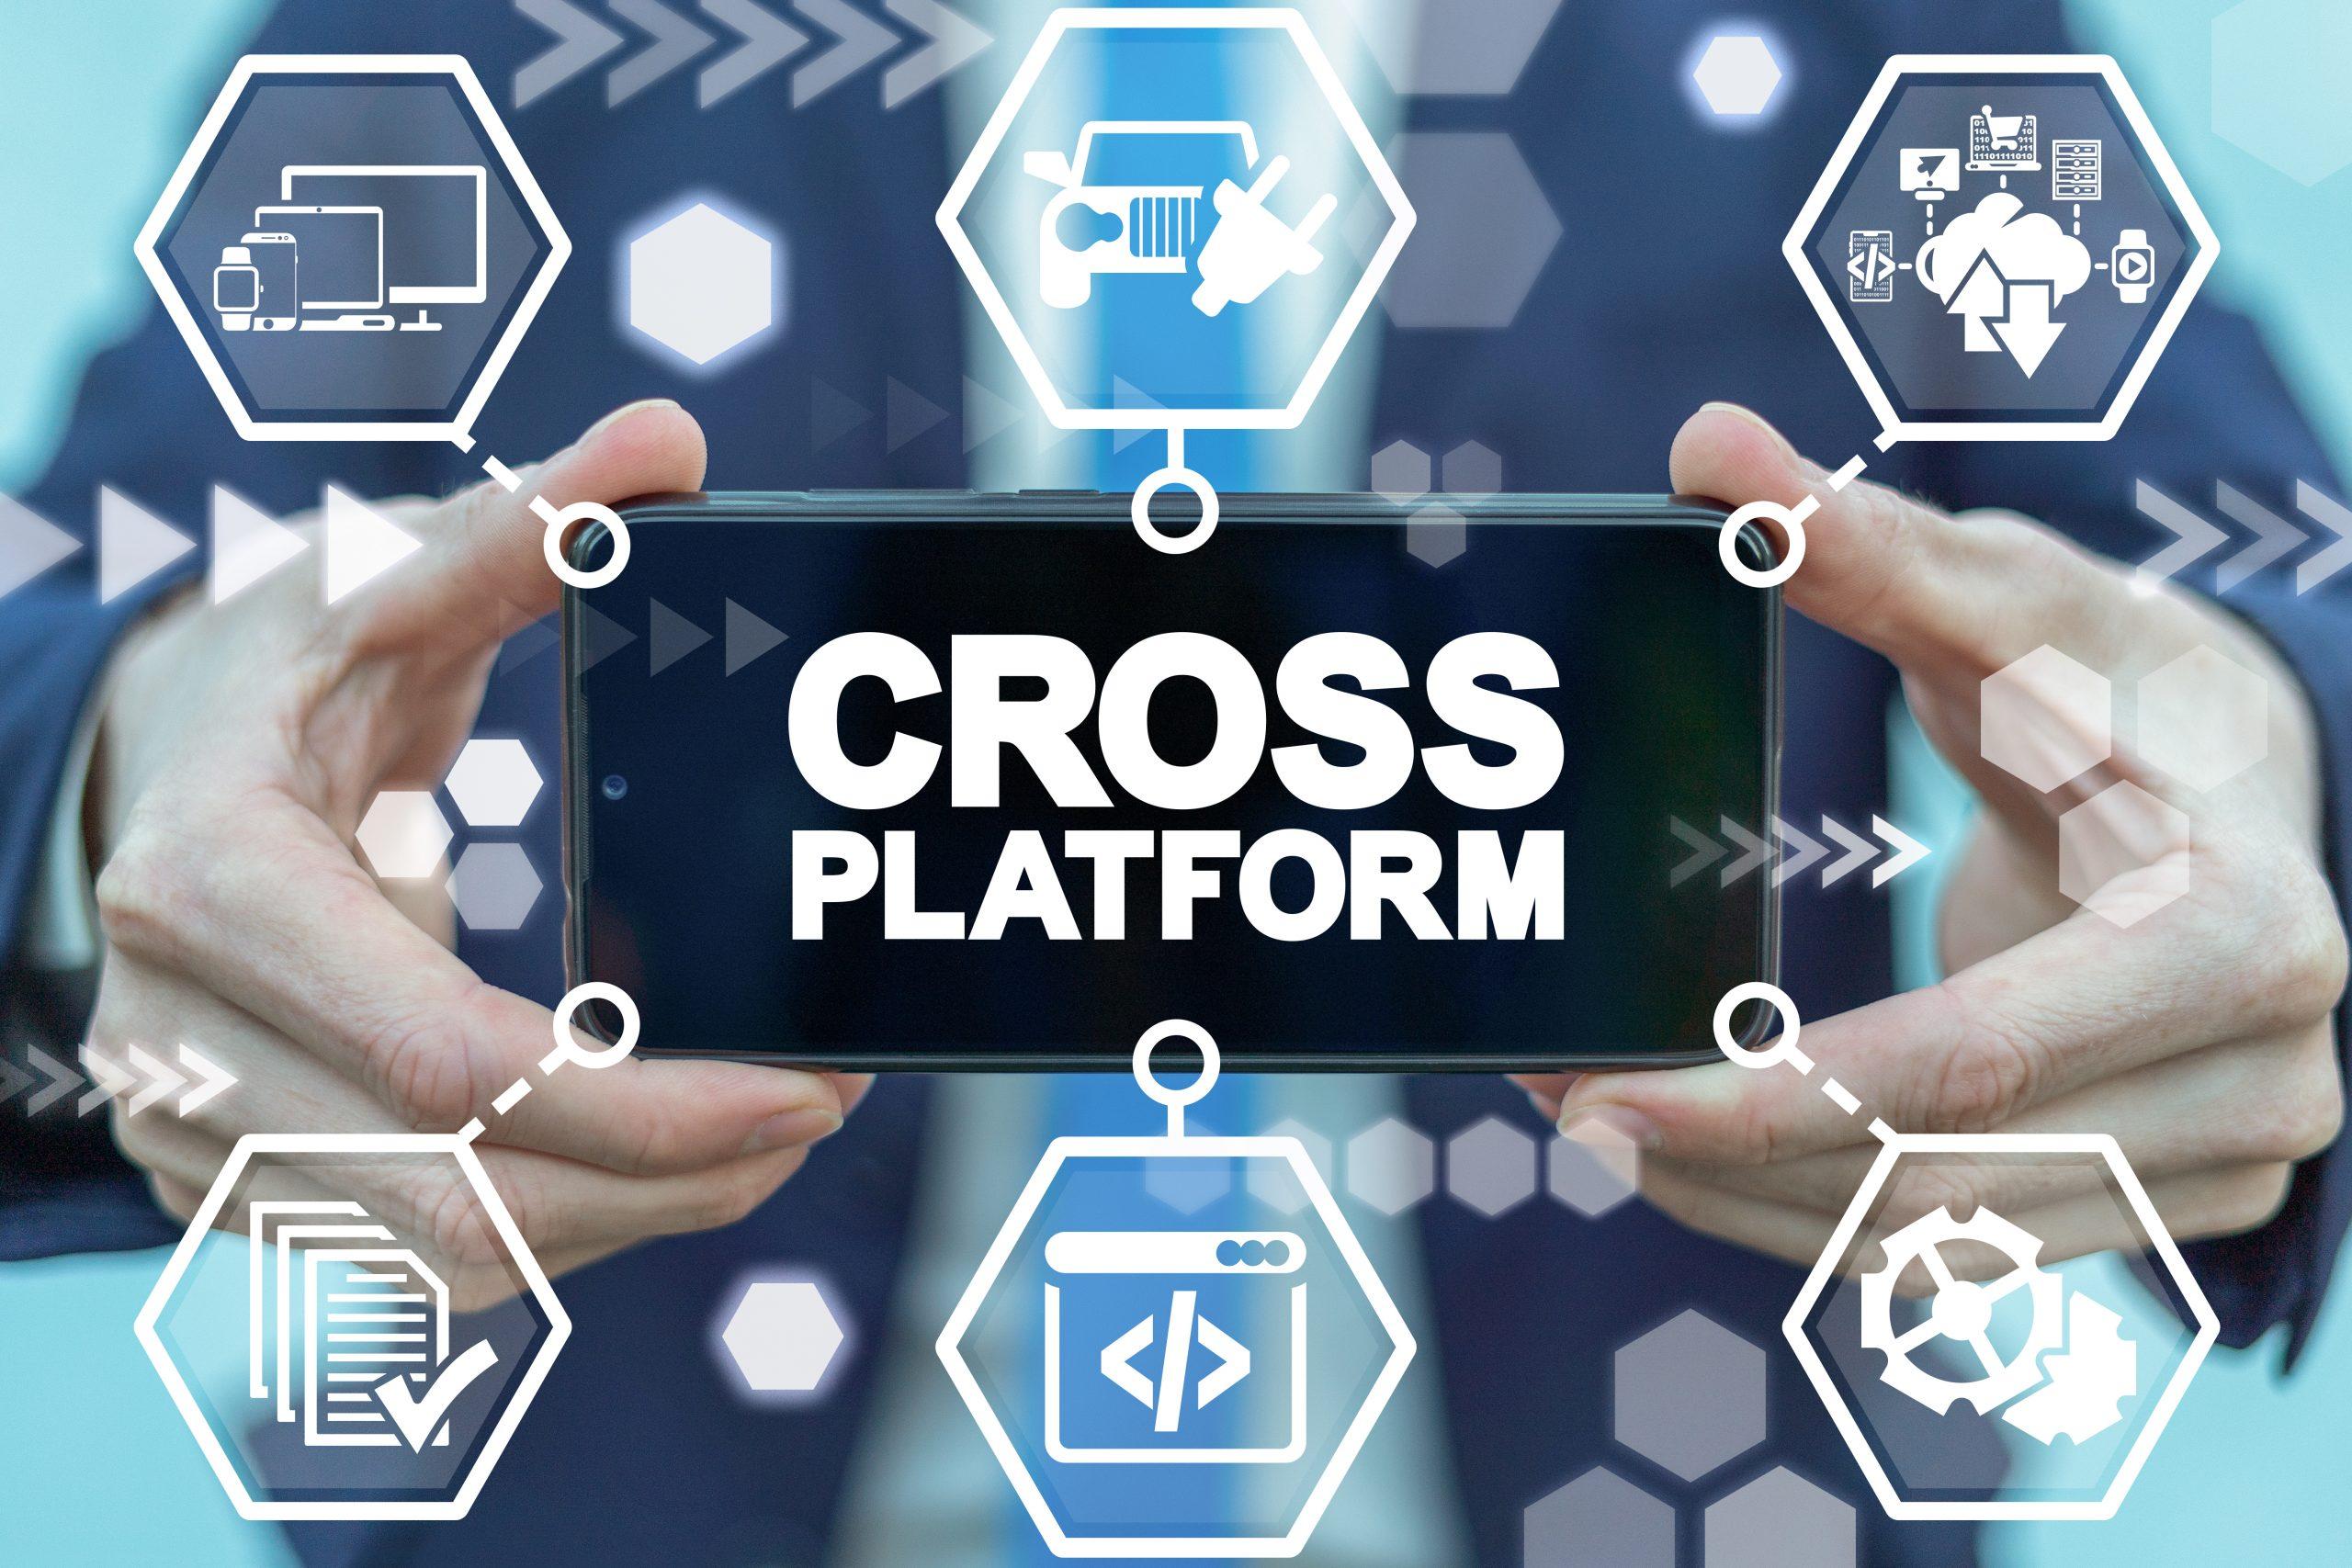 Cross platform software development